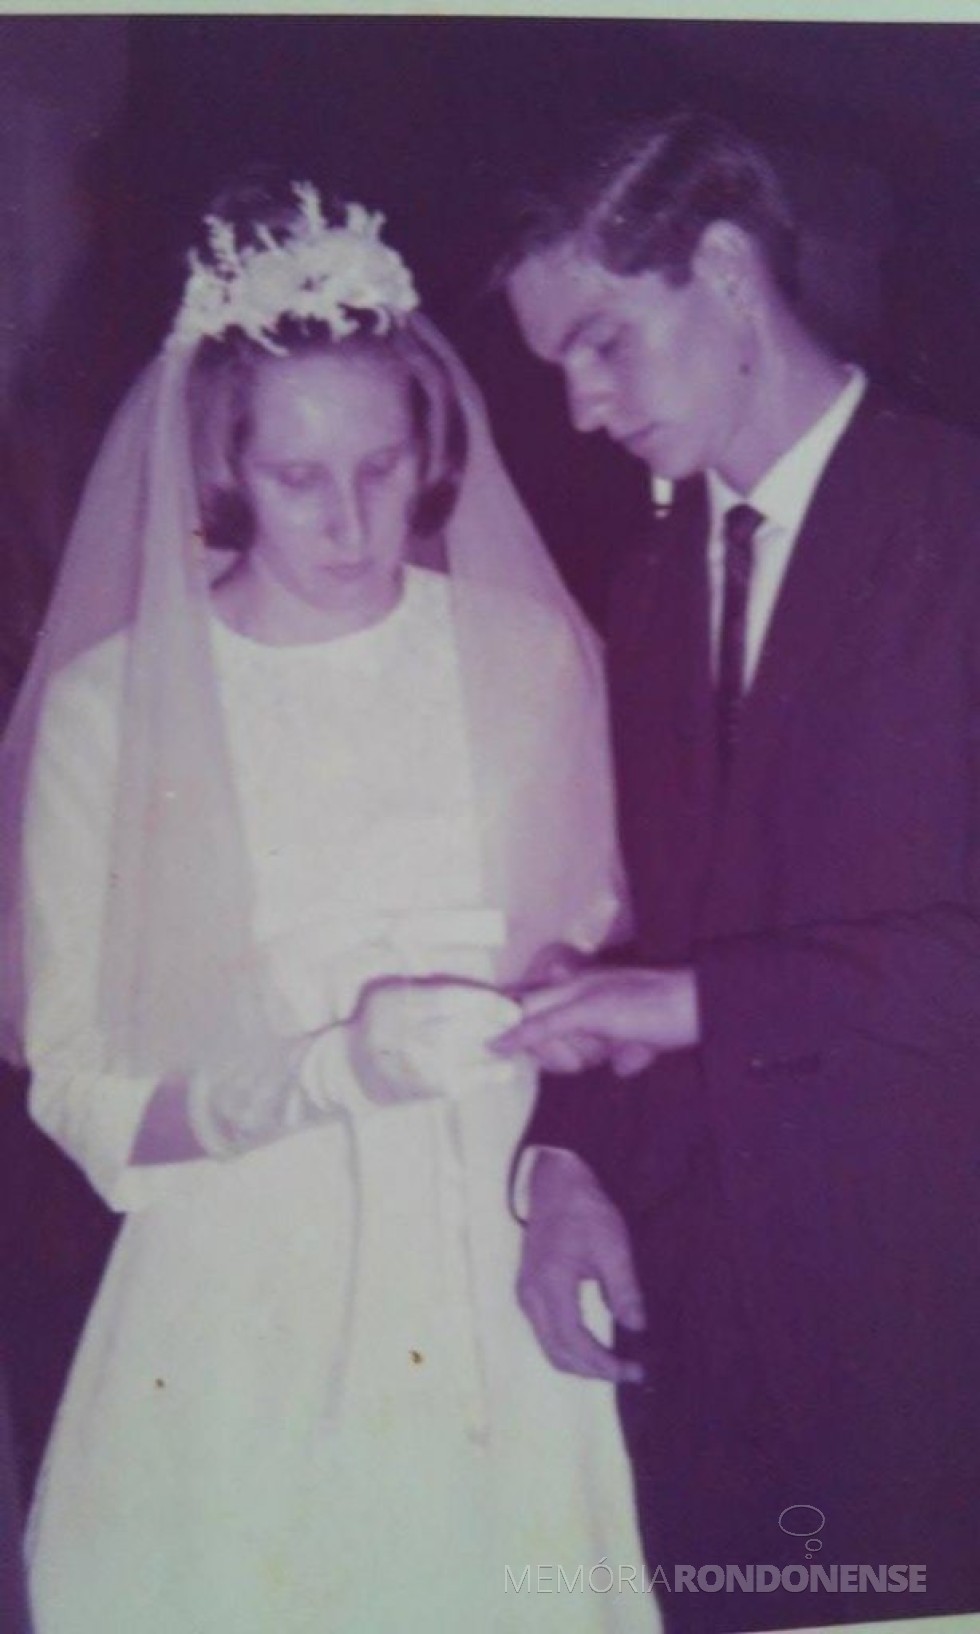 Troca de alianças dos noivos Venilda Mees e Romeu Saatkamp na Igreja Martin Luther, em janeiro de  1967. 
Imagem: Acervo do casal - FOTO 8 - 